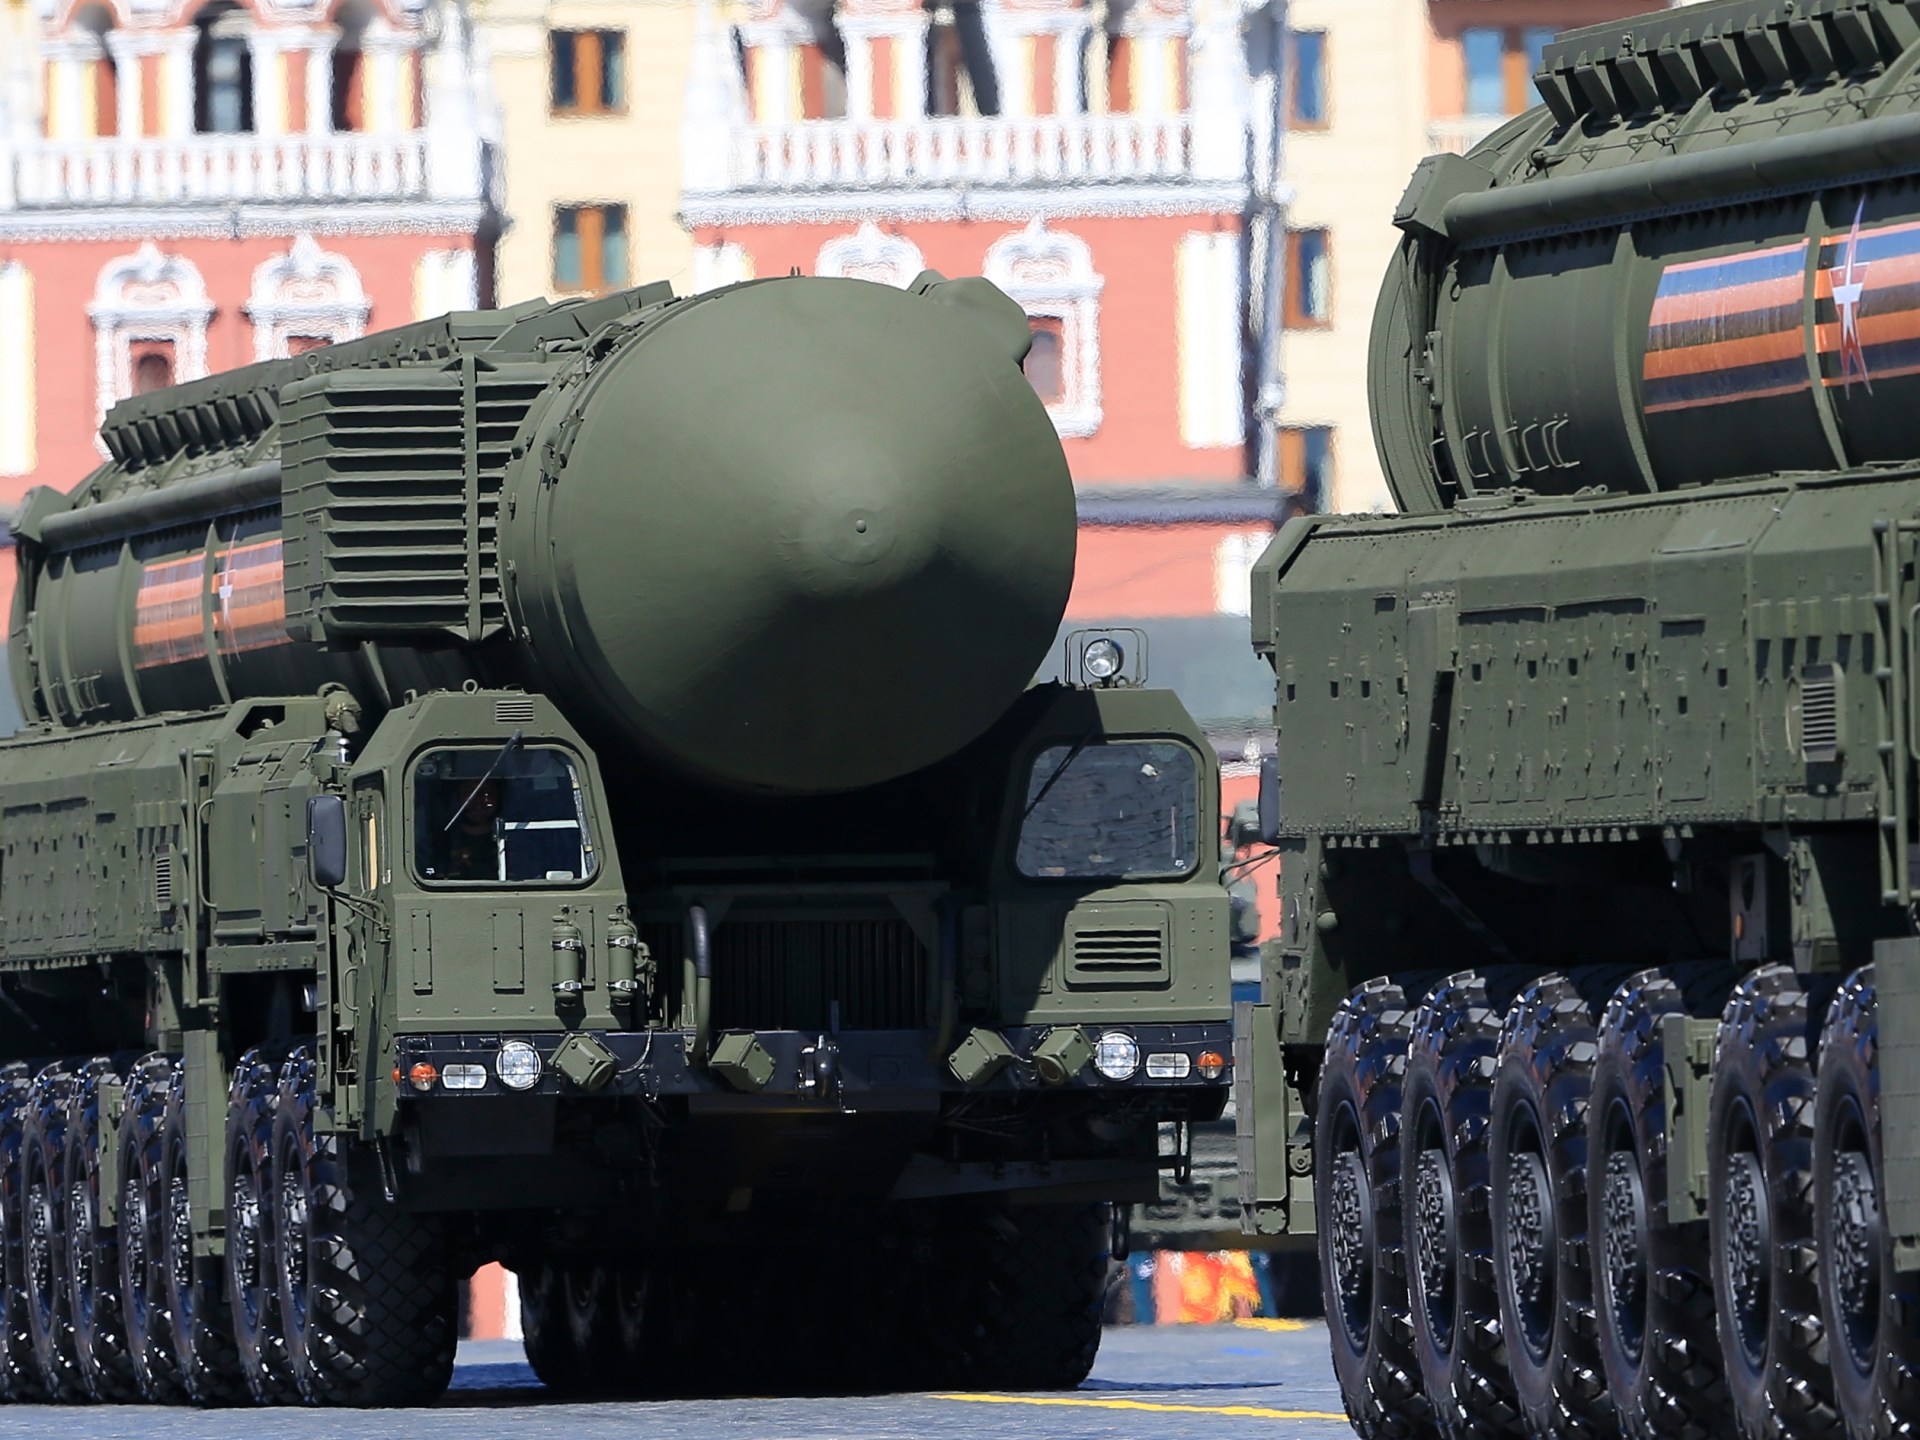 روسيا تعلن صد هجوم "عابر للحدود" وتحذر من "ضربة نووية" تنهي العالم